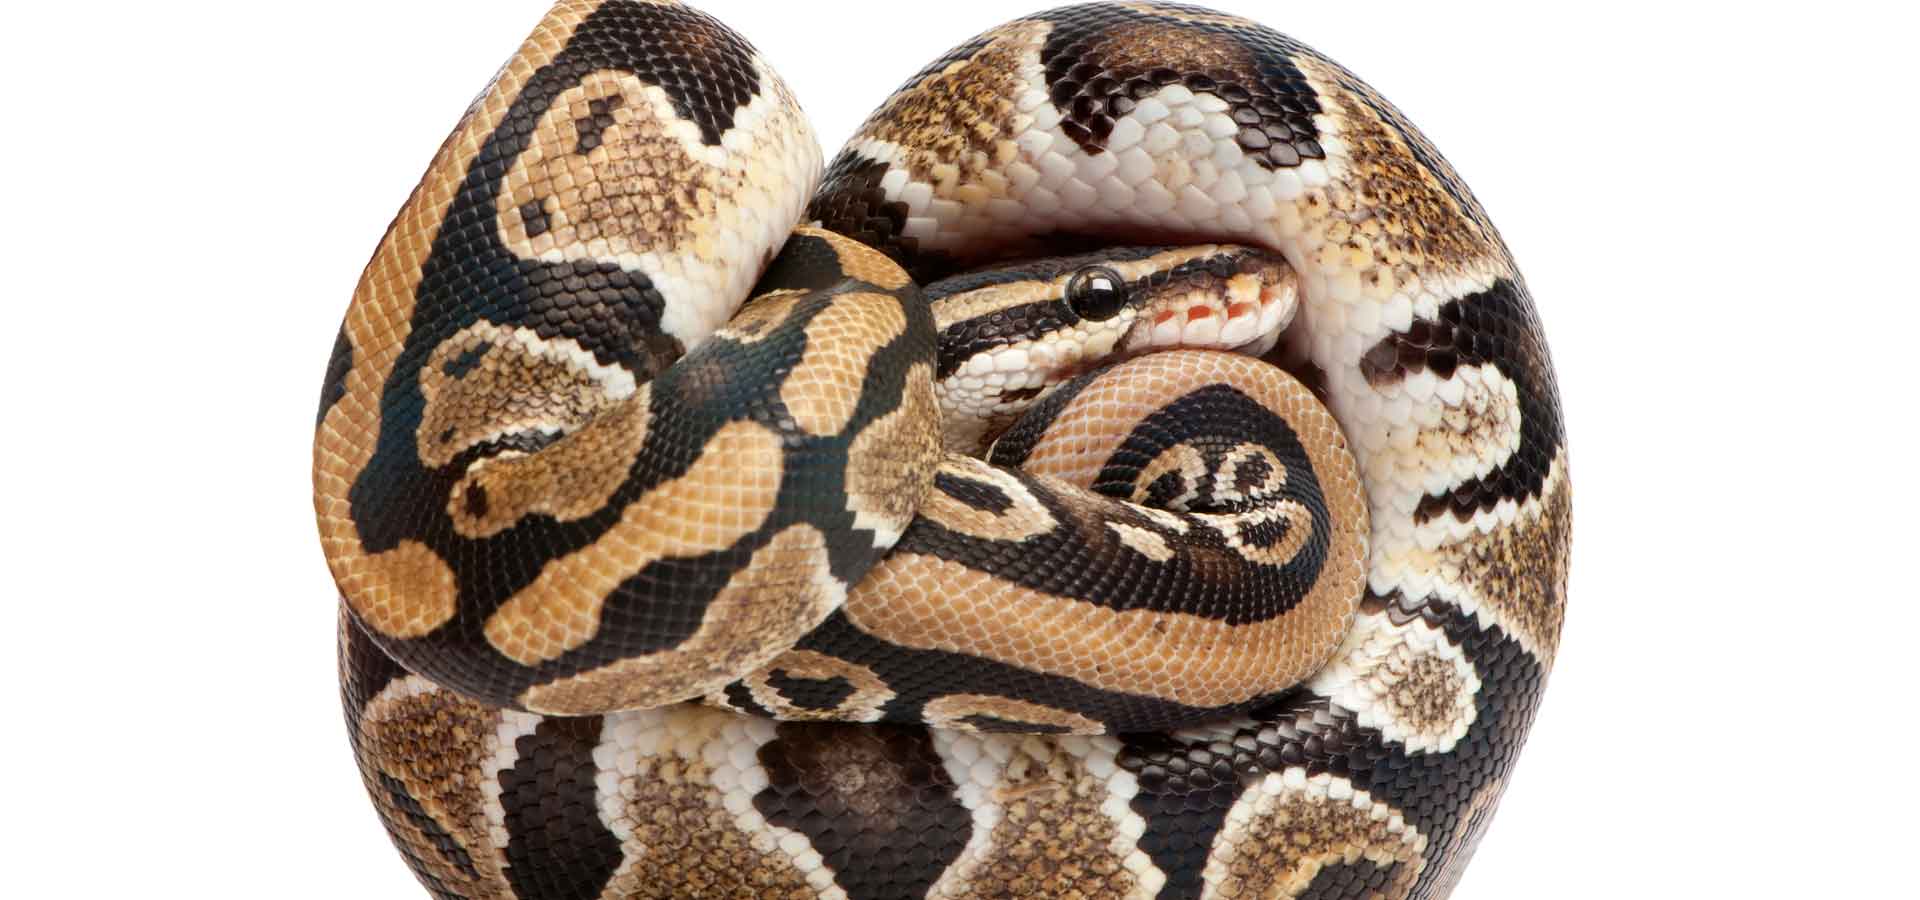 Tierarzt Schlangen